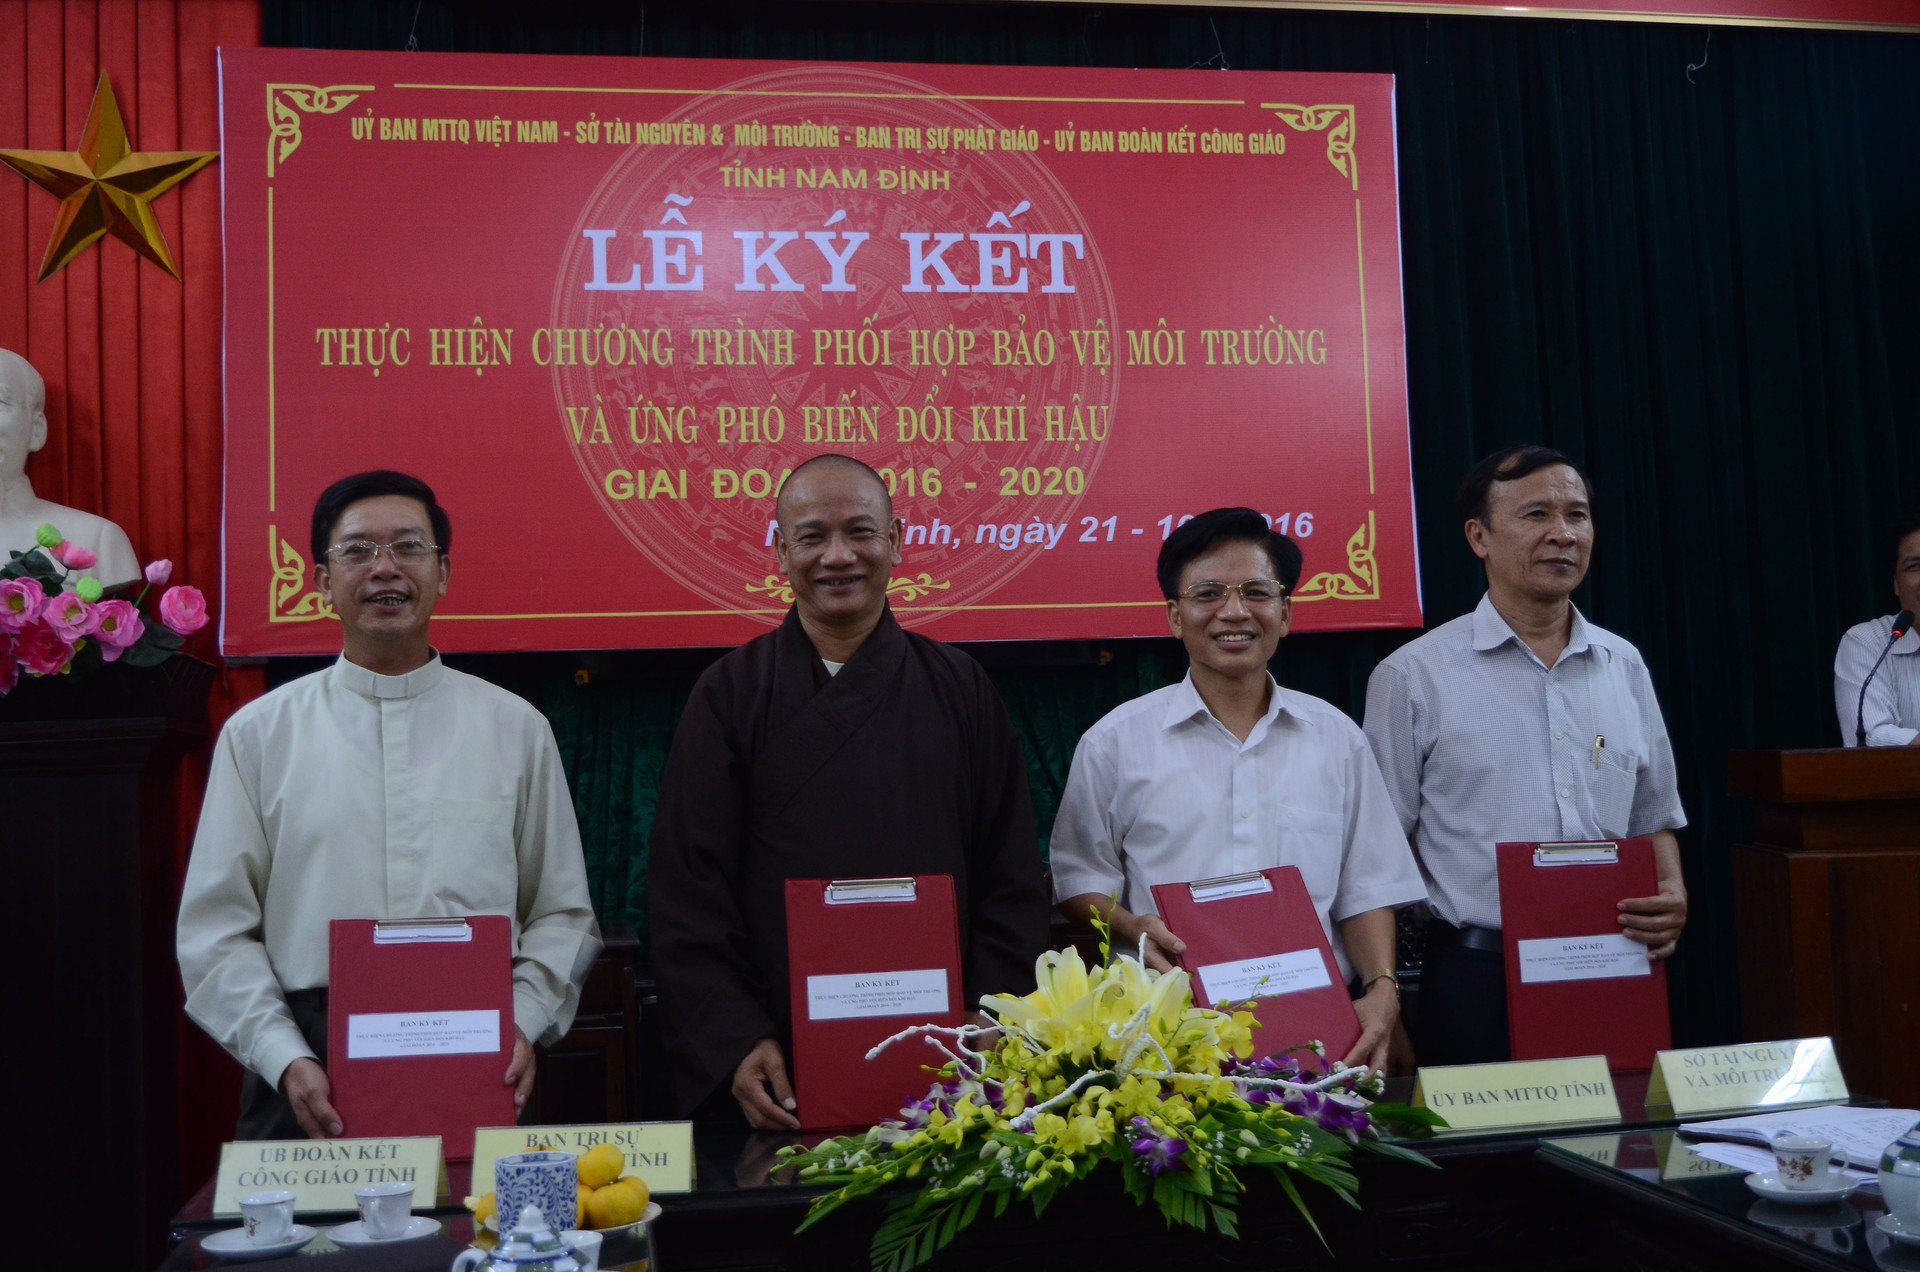 Hằng năm, Ủy ban MTTQ tỉnh, Ban trị sự Giáo hội Phật giáo tỉnh, Ủy ban Đoàn kết Công giáo tỉnh và Sở Tài nguyên-Môi trường tỉnh Nam Định ký kết thực hiện Chương trình phối hợp tham gia bảo vệ môi trường, ứng phó với biến đổi khí hậu.